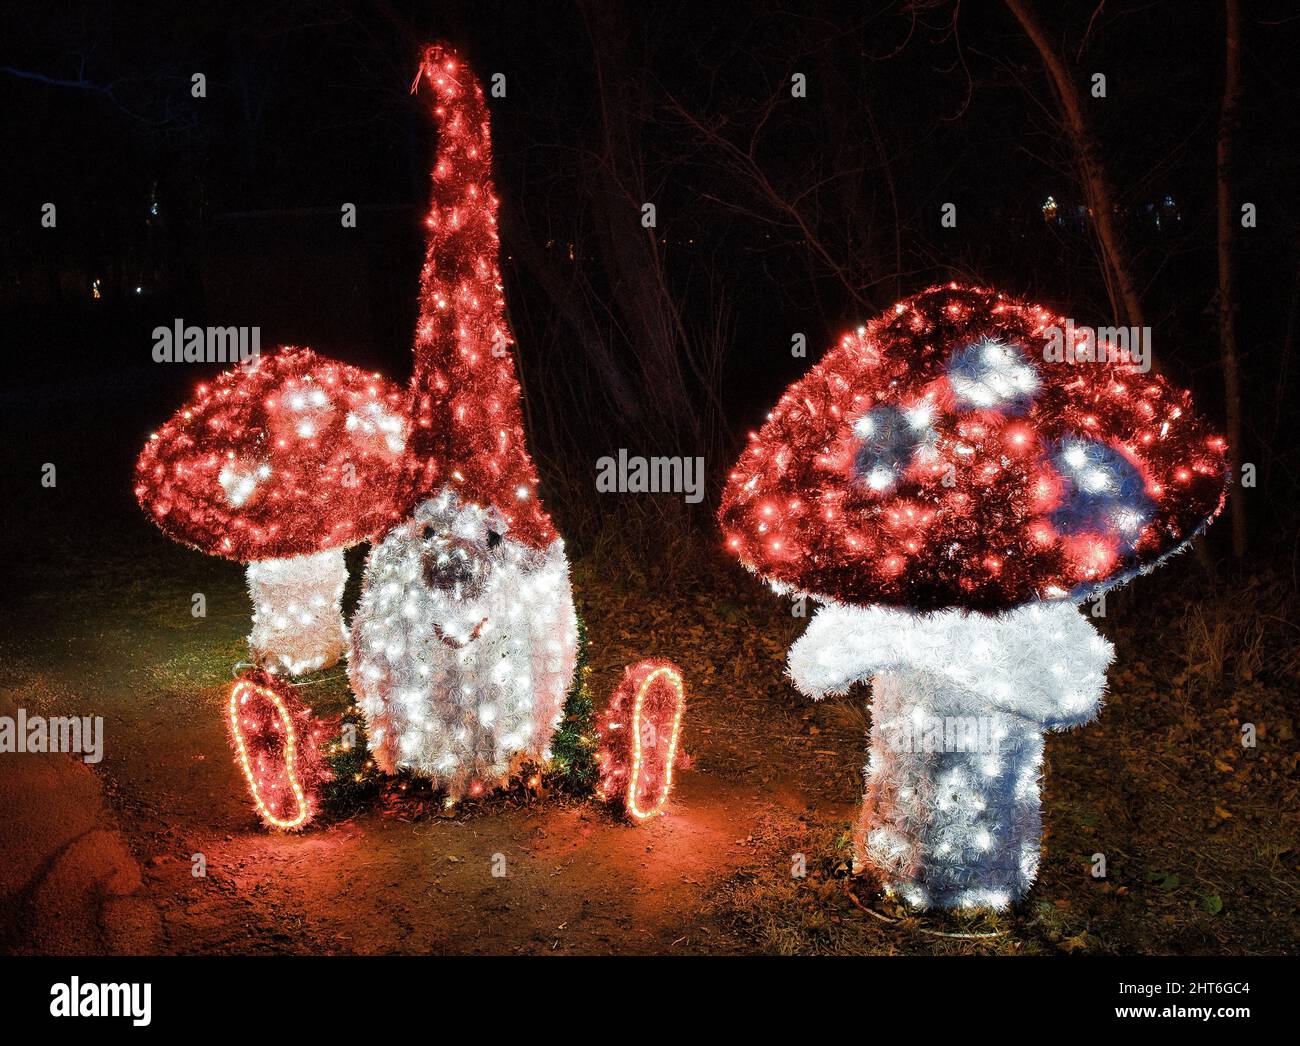 Splendide figure magiche di funghi notturni con molte luci a LED che illuminano il giardino all'aperto Foto Stock